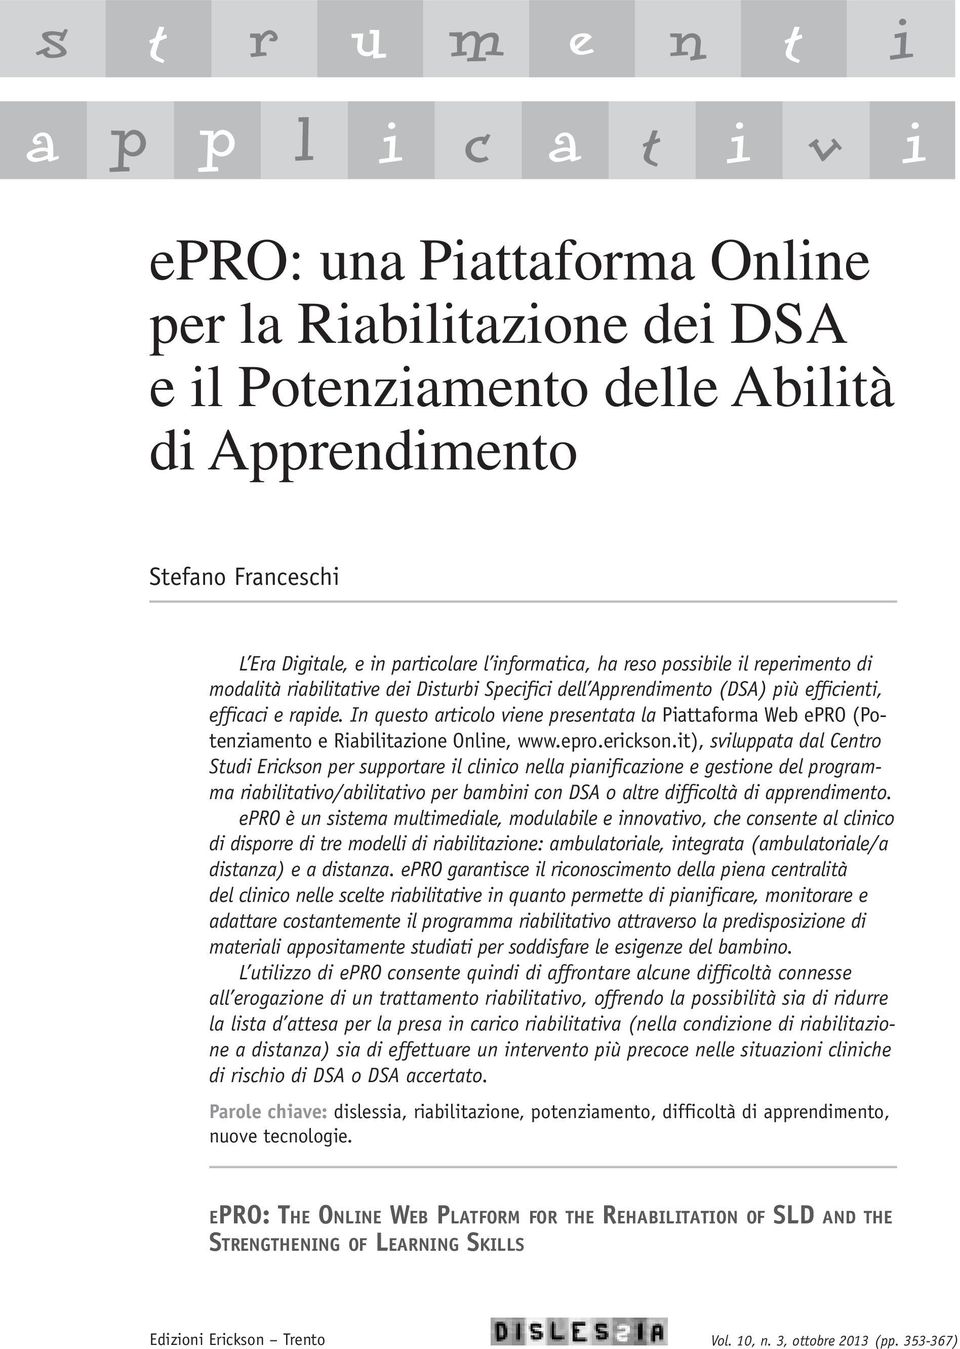 In questo articolo viene presentata la Piattaforma Web epro (Potenziamento e Riabilitazione Online, www.epro.erickson.